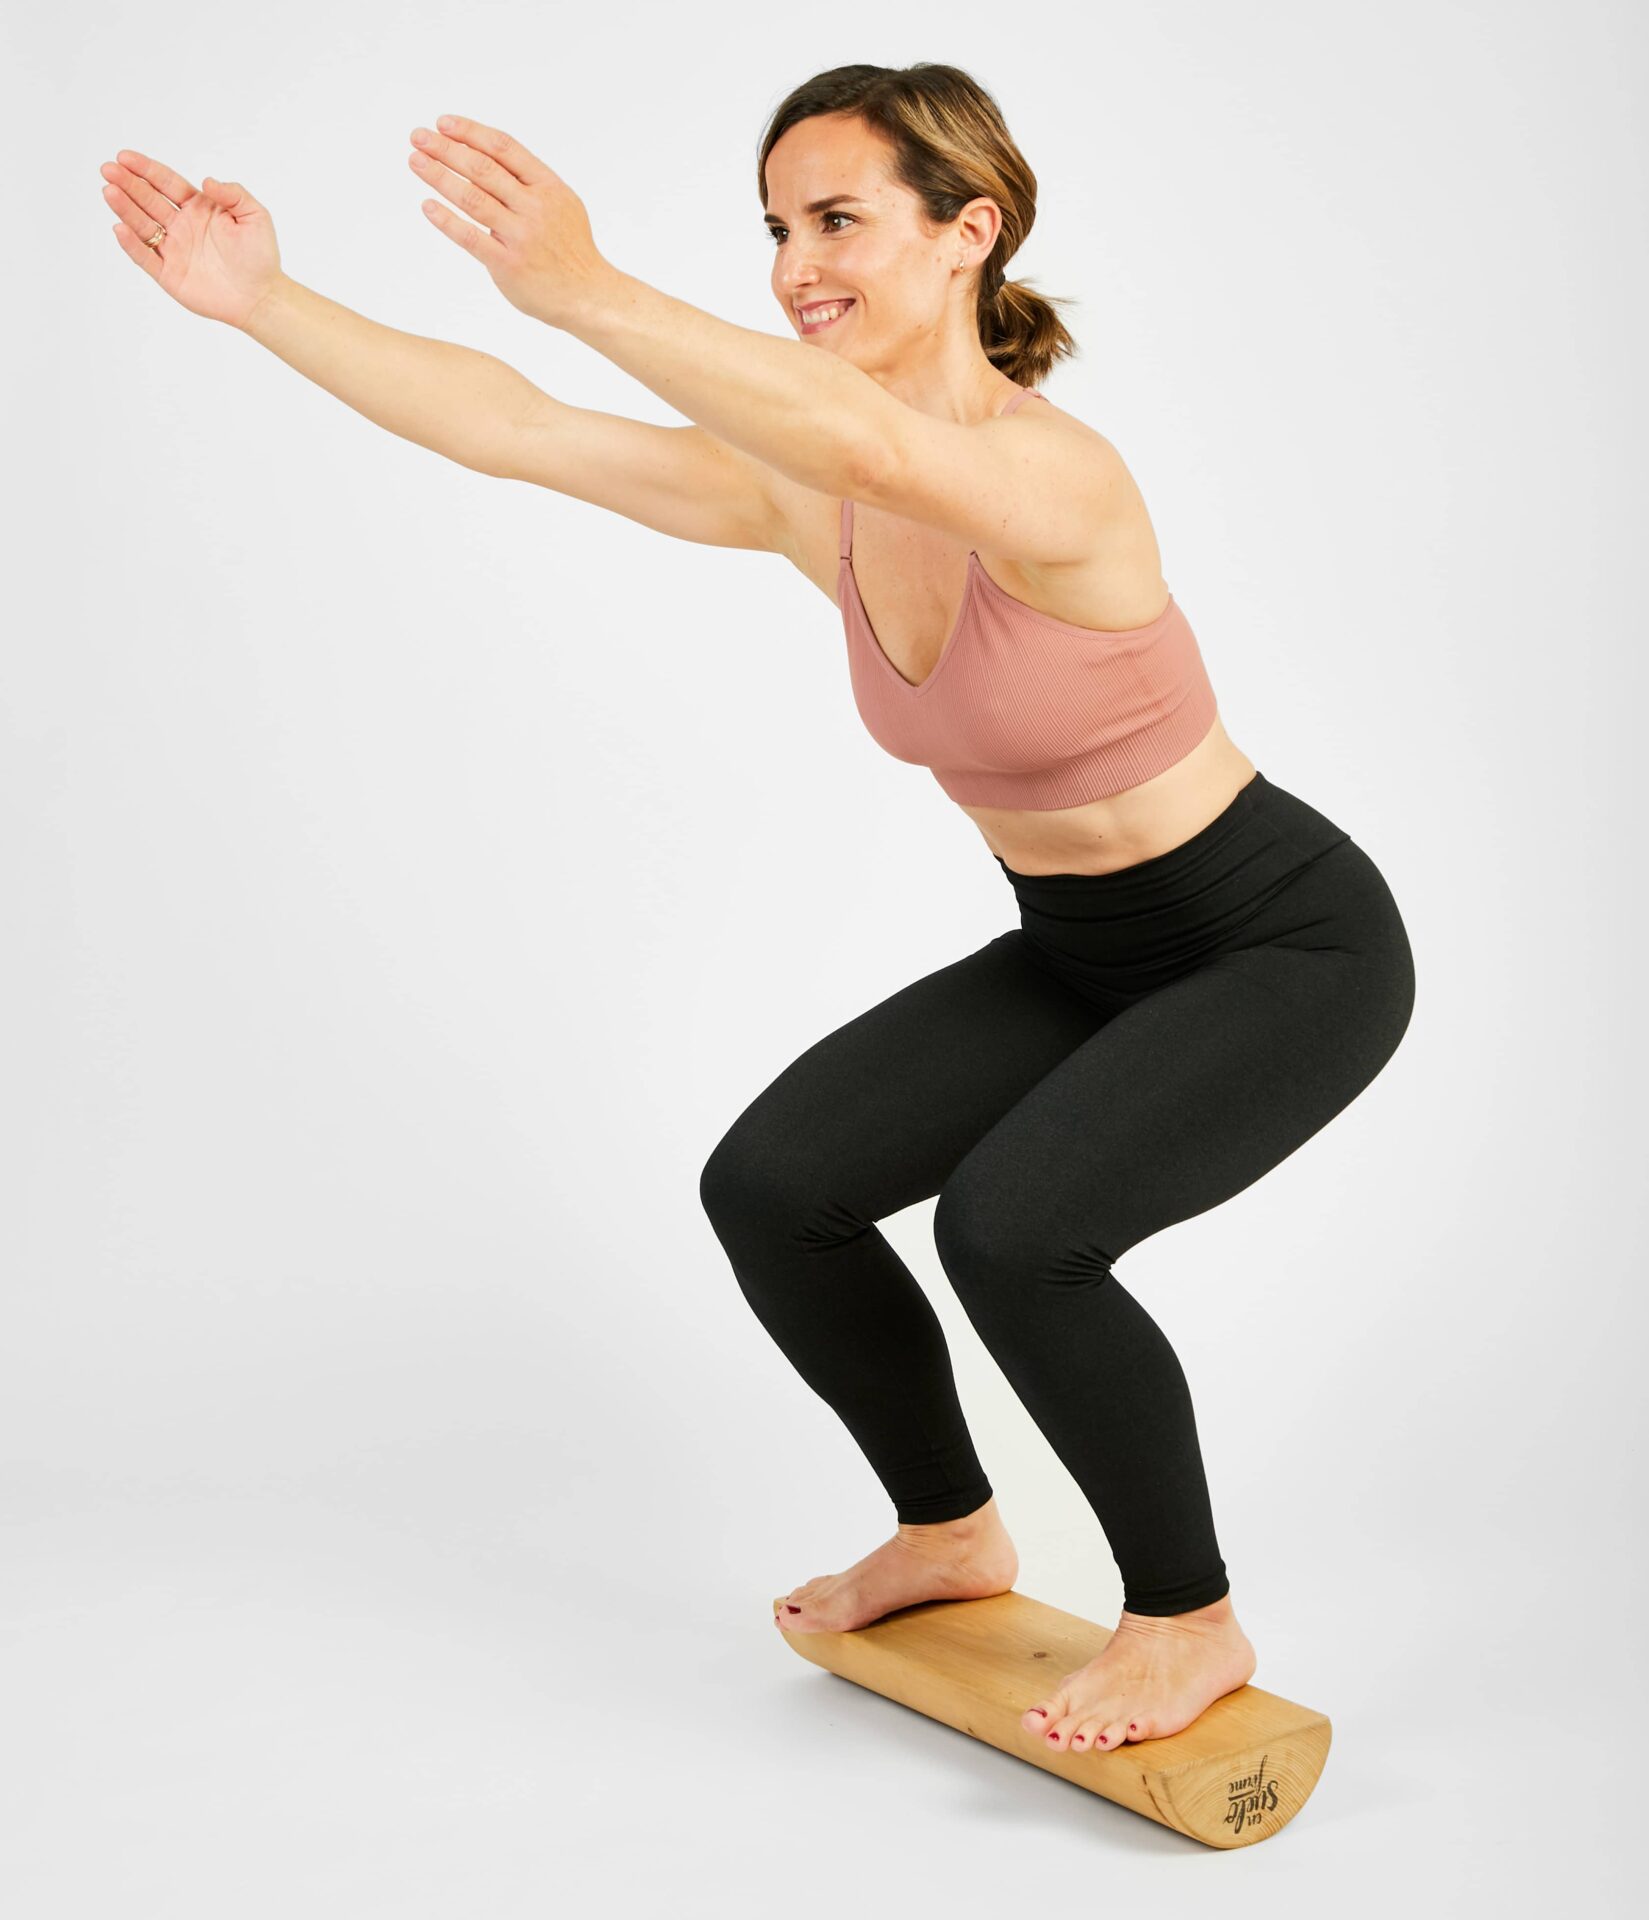 El Tronco 5P: La herramienta que mejorará tu postura y suelo